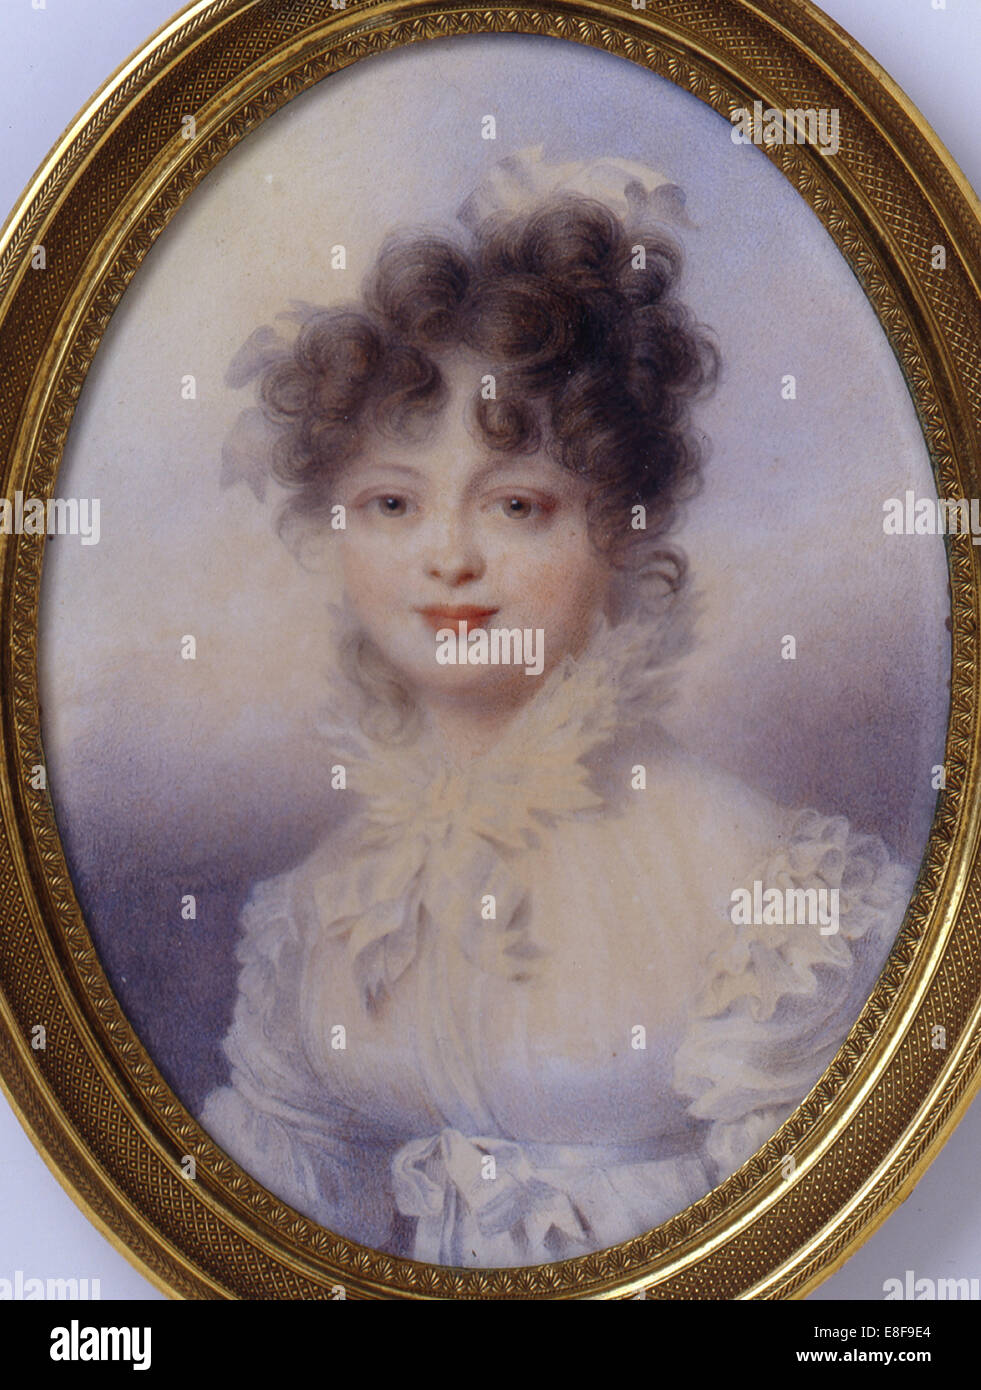 La granduchessa Caterina Pàvlovna della Russia (1788-1819), regina di Württemberg. Artista: Isabey, Jean-Baptiste (1767-1855) Foto Stock